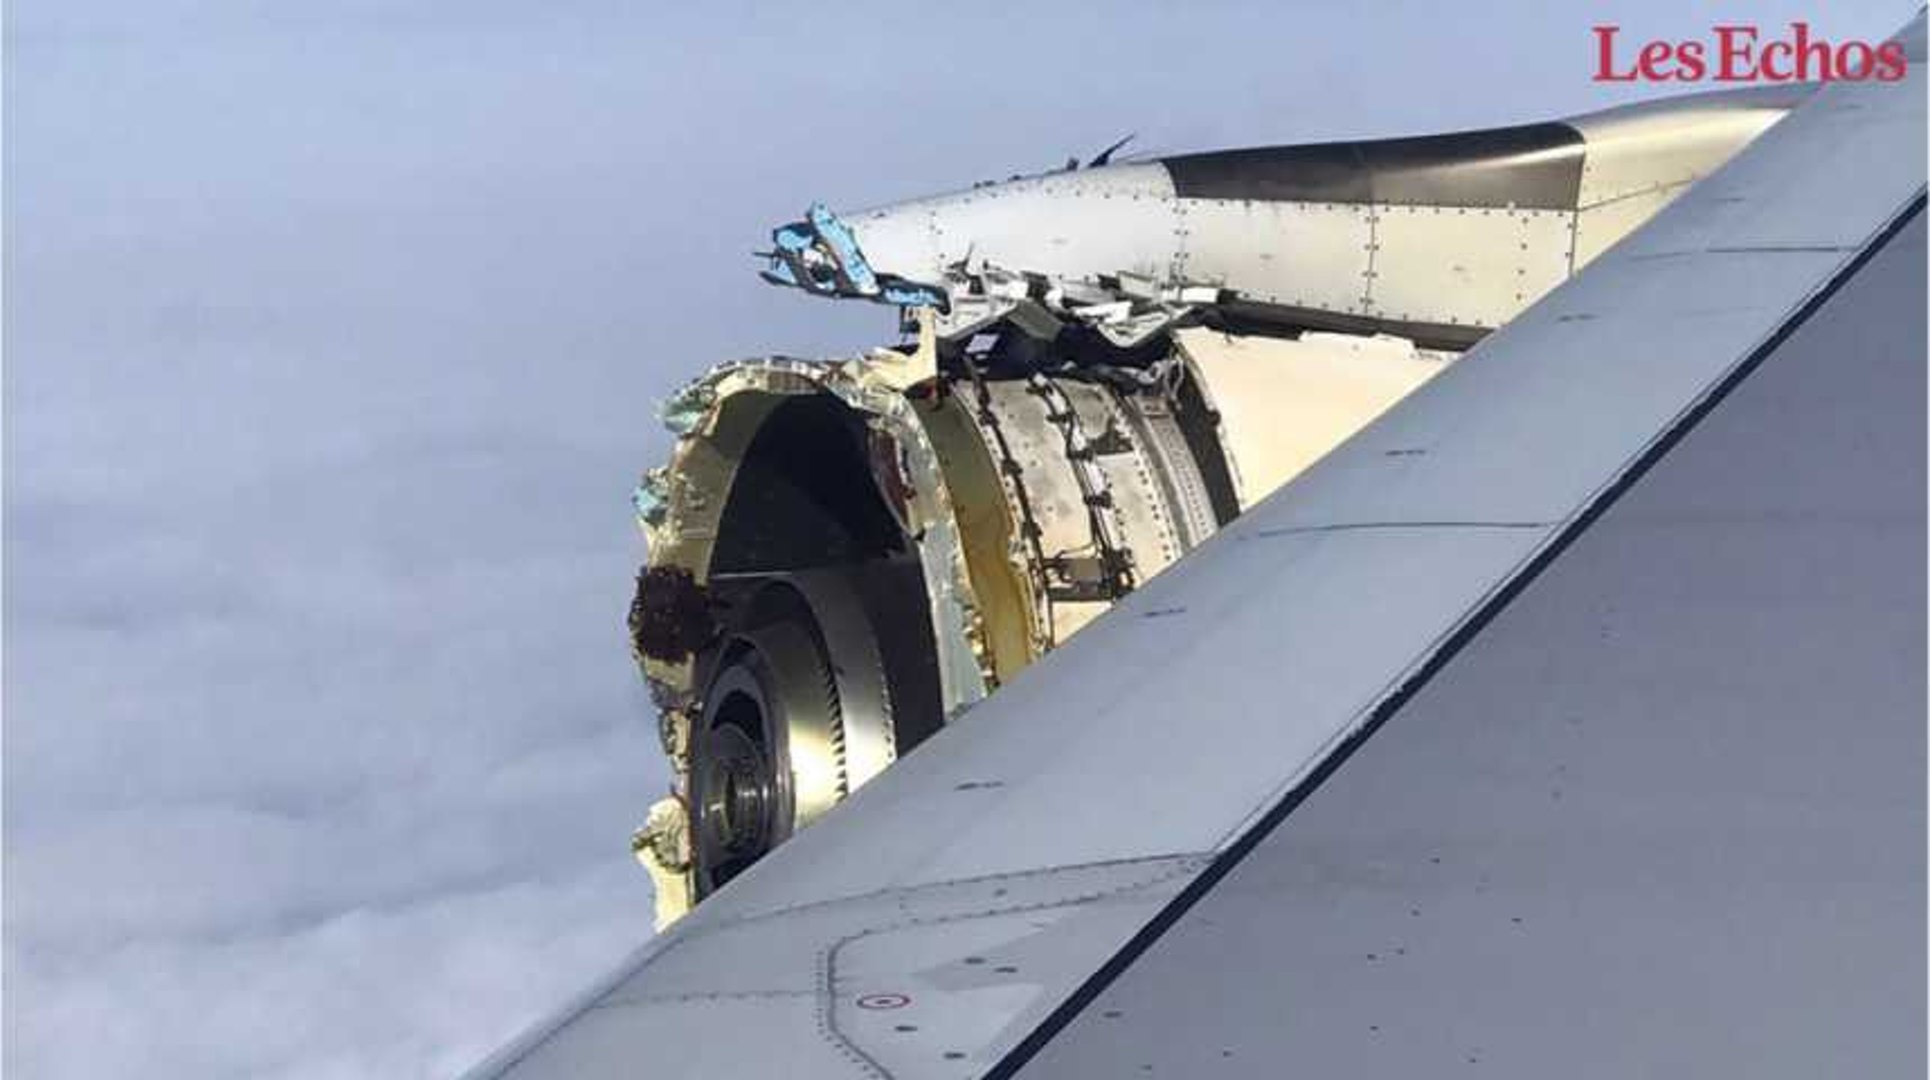 Un vol Air France atterrit d'urgence à Pékin après «un incident technique»  - Le Parisien